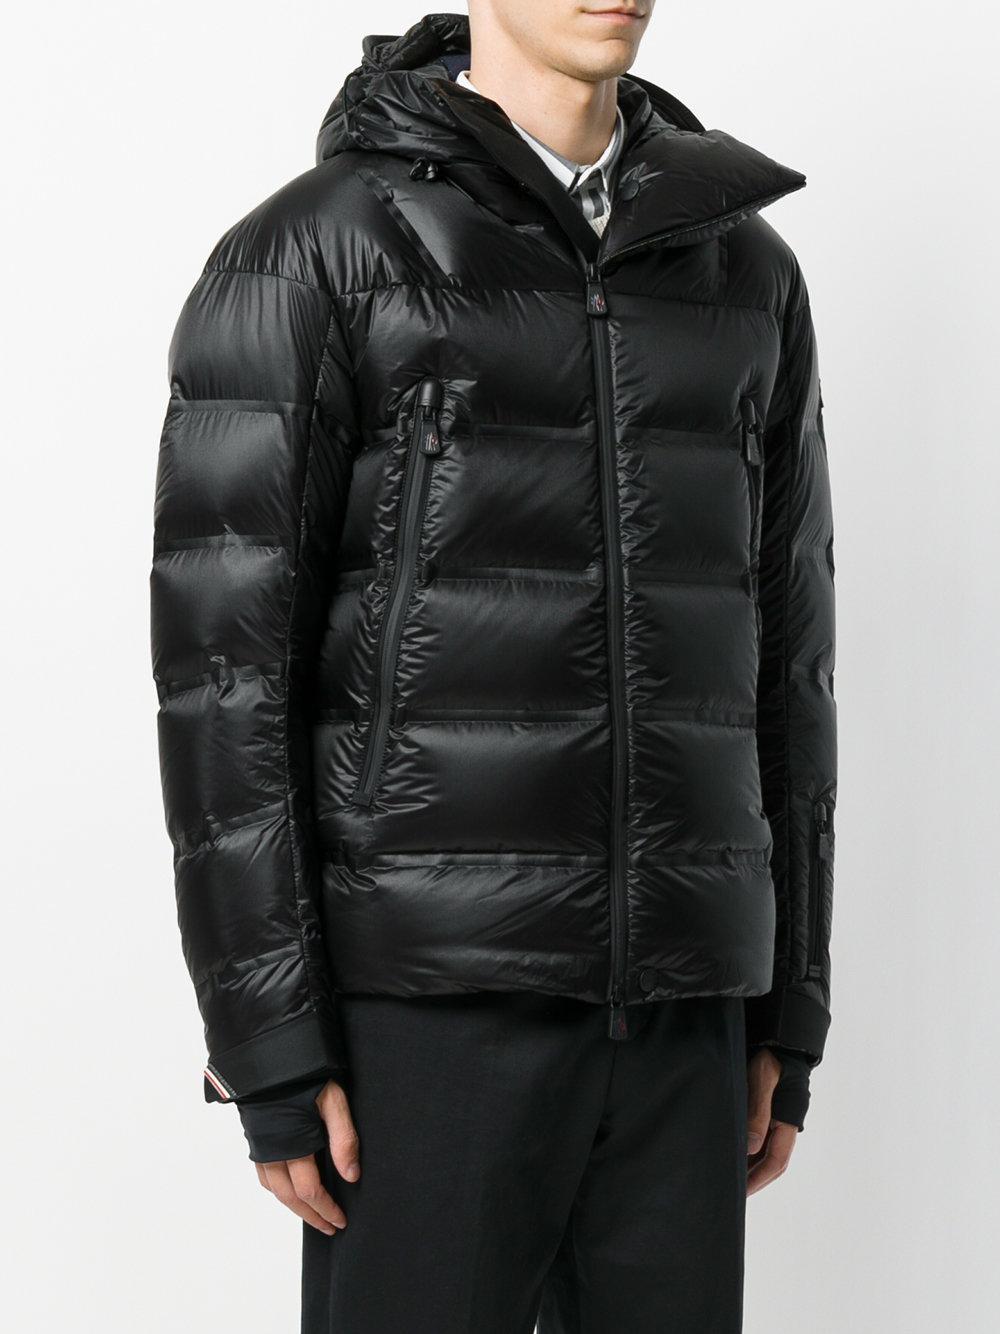 Lyst - Moncler Grenoble Padded Jacket in Black for Men